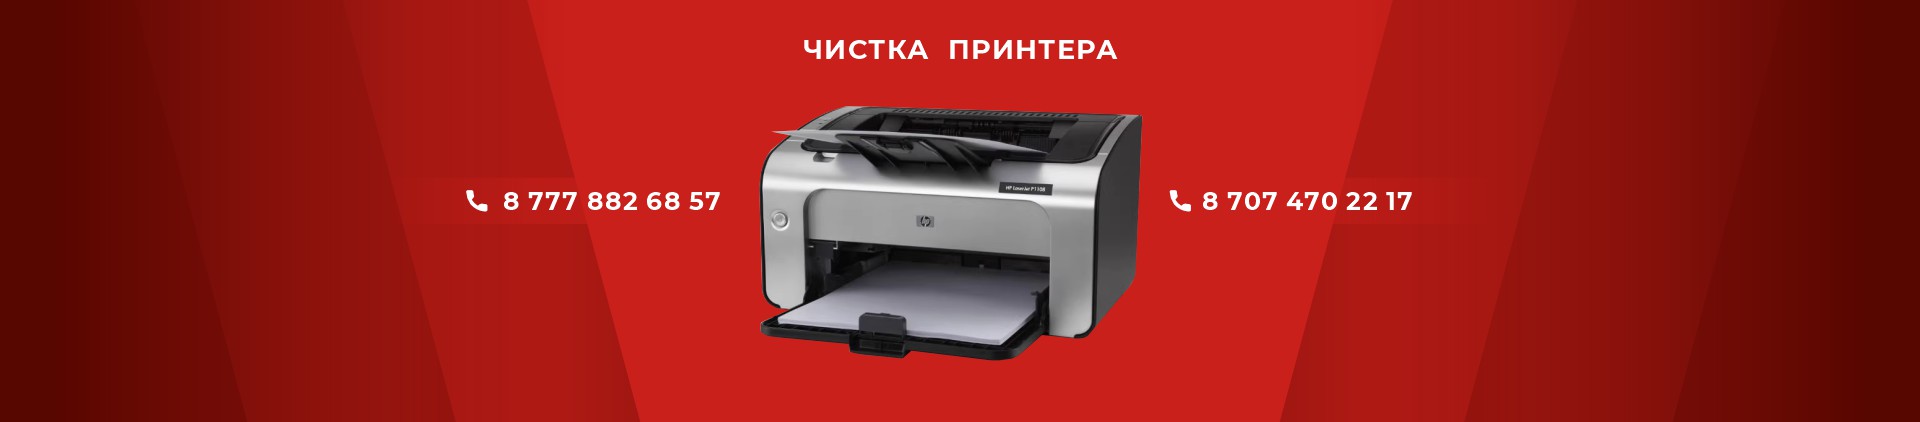 чистка принтера в астане